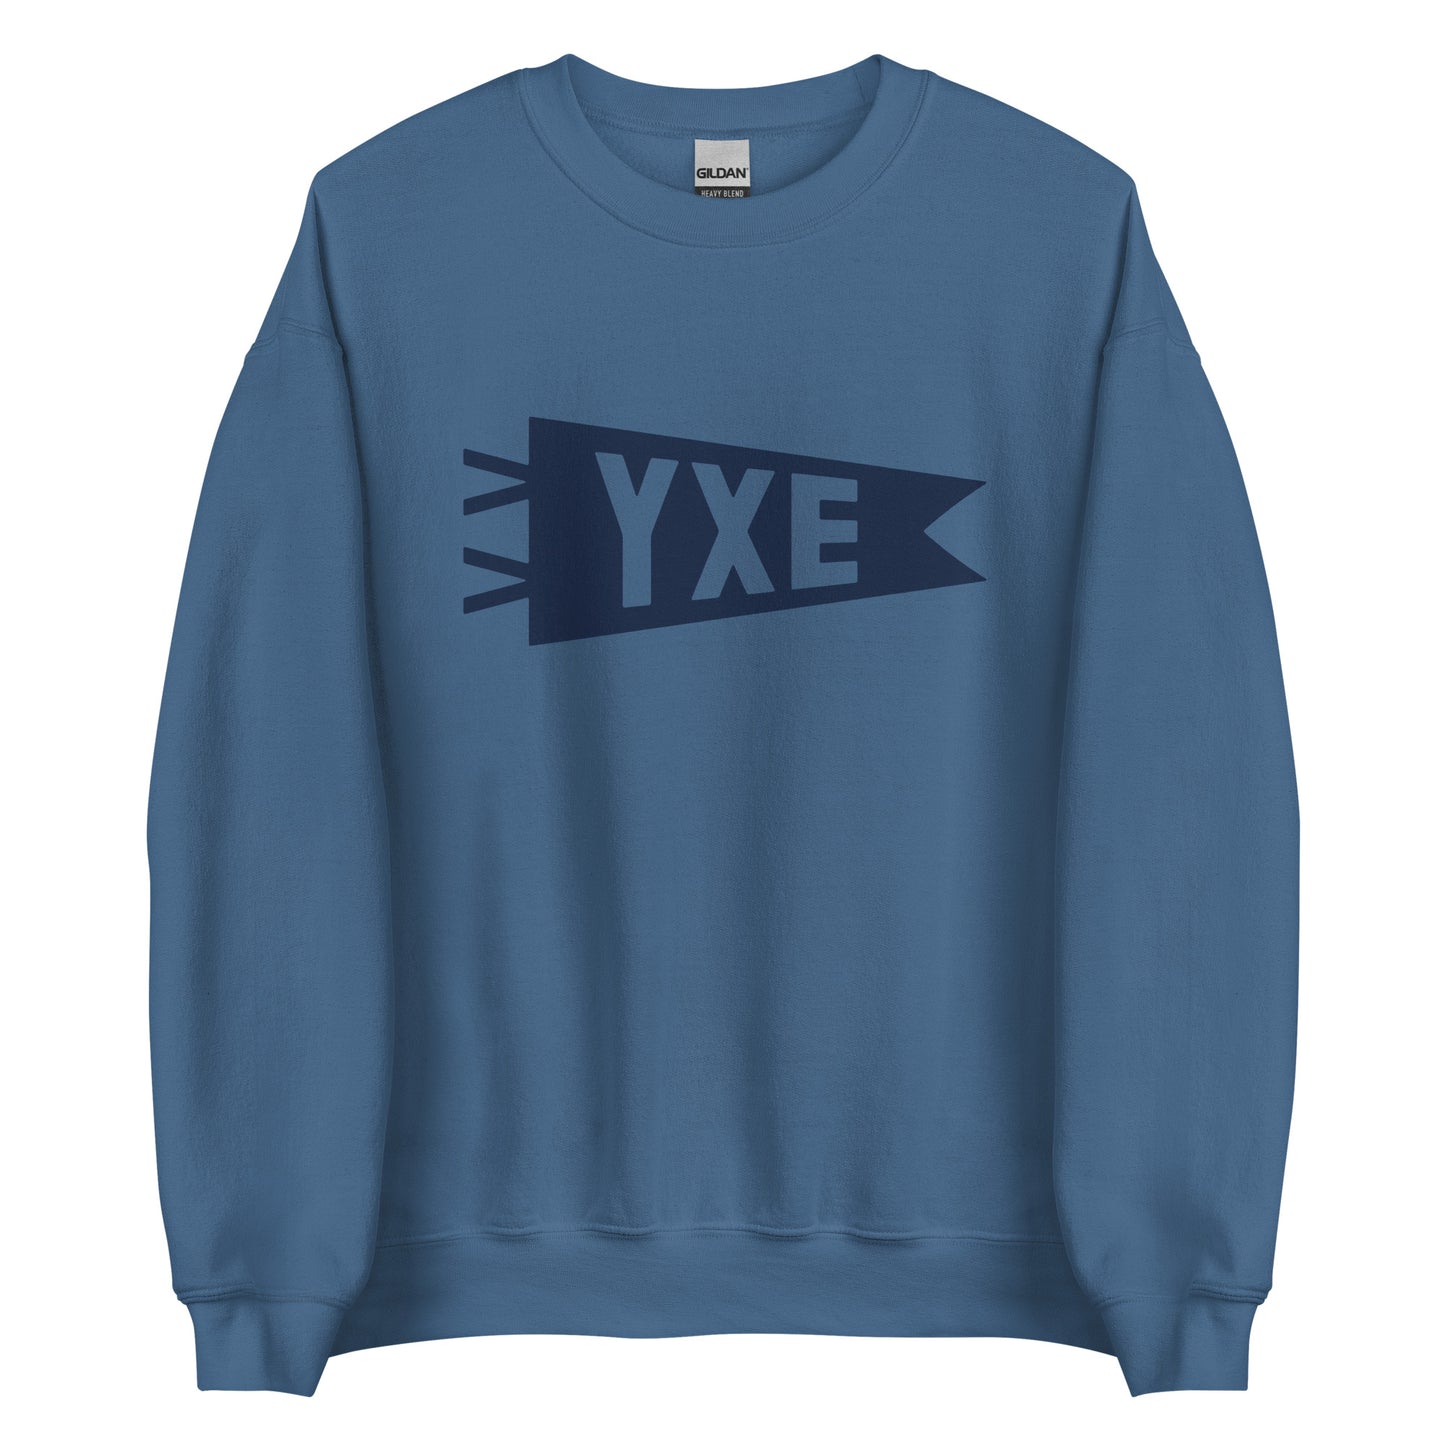 Airport Code Sweatshirt - Navy Blue Graphic • YXE Saskatoon • YHM Designs - Image 05